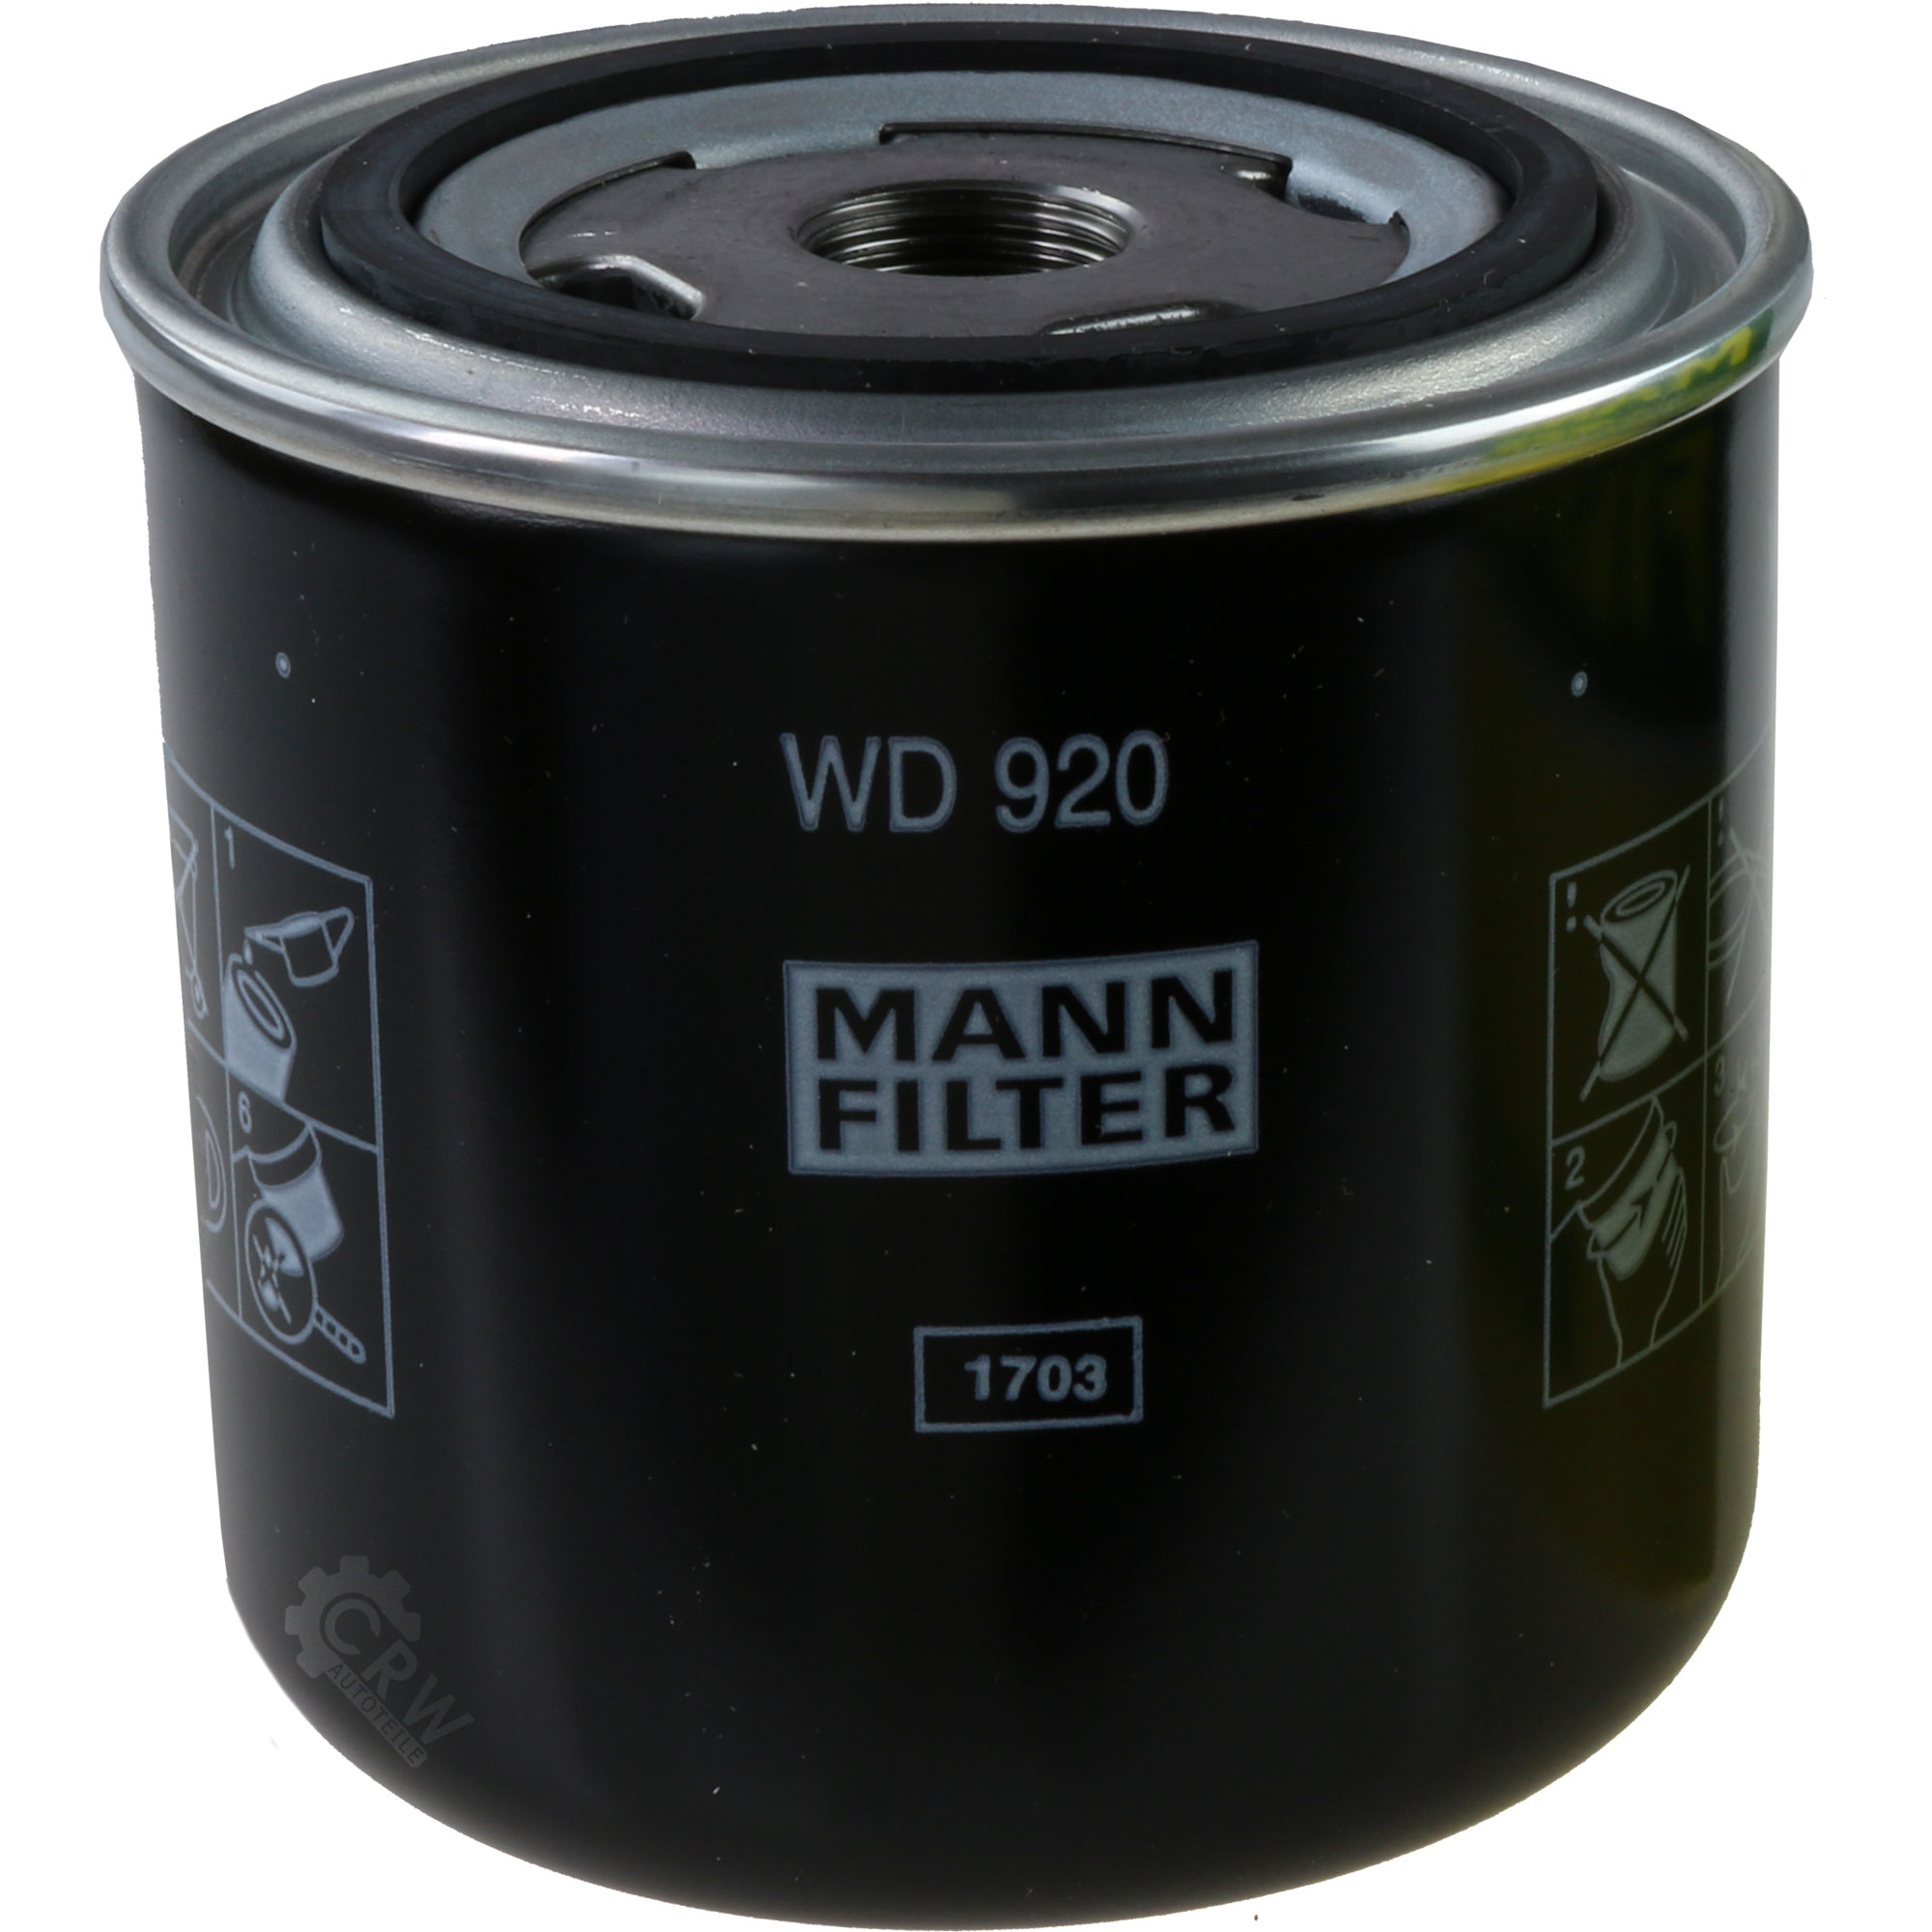 MANN-FILTER Hydraulikfilter für Automatikgetriebe WD 920